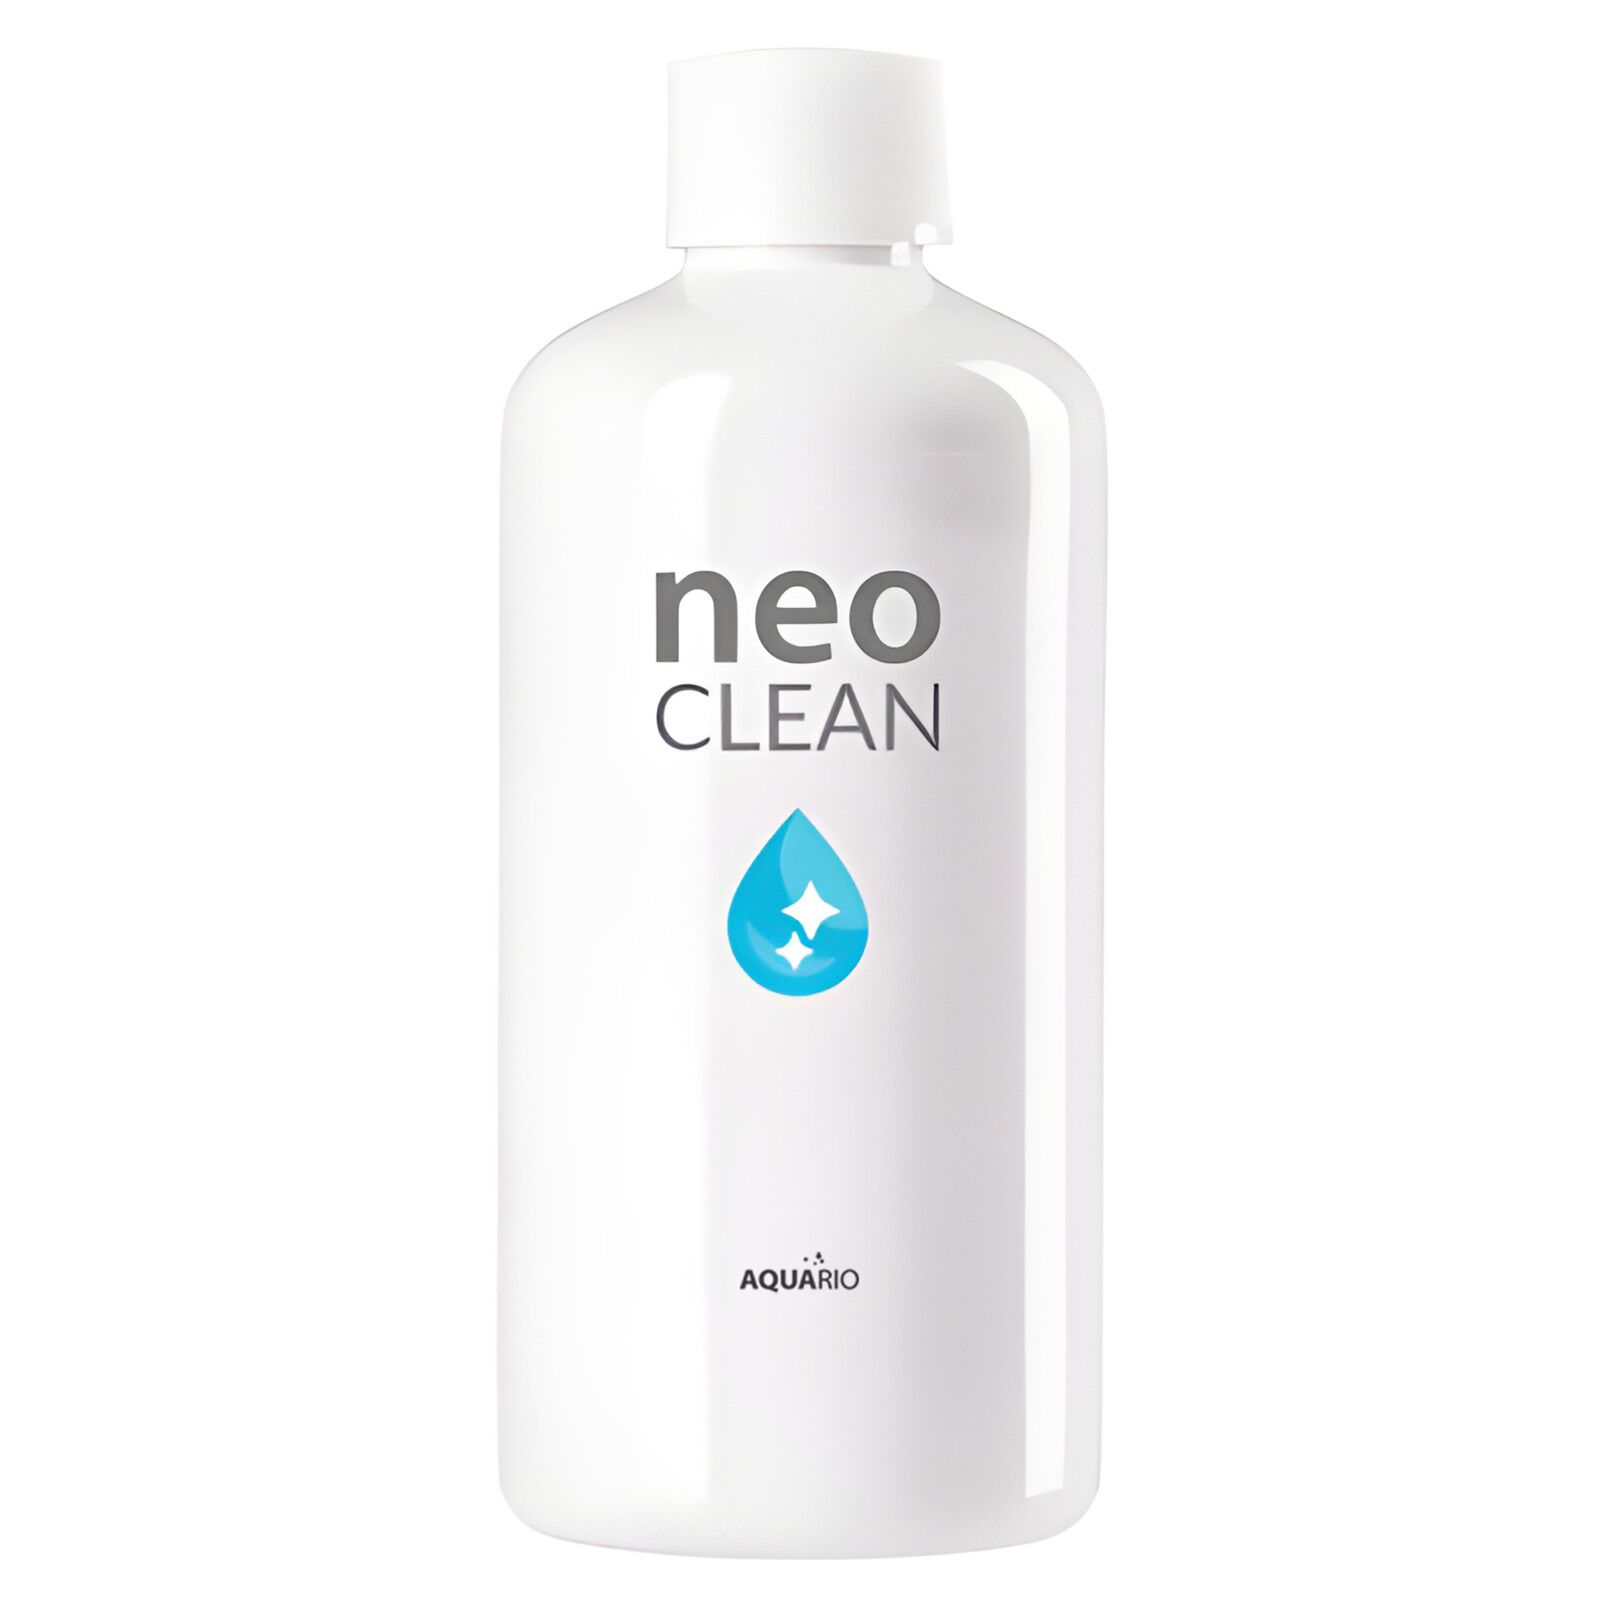 AQUARIO - Neo Clean - Water Conditioner